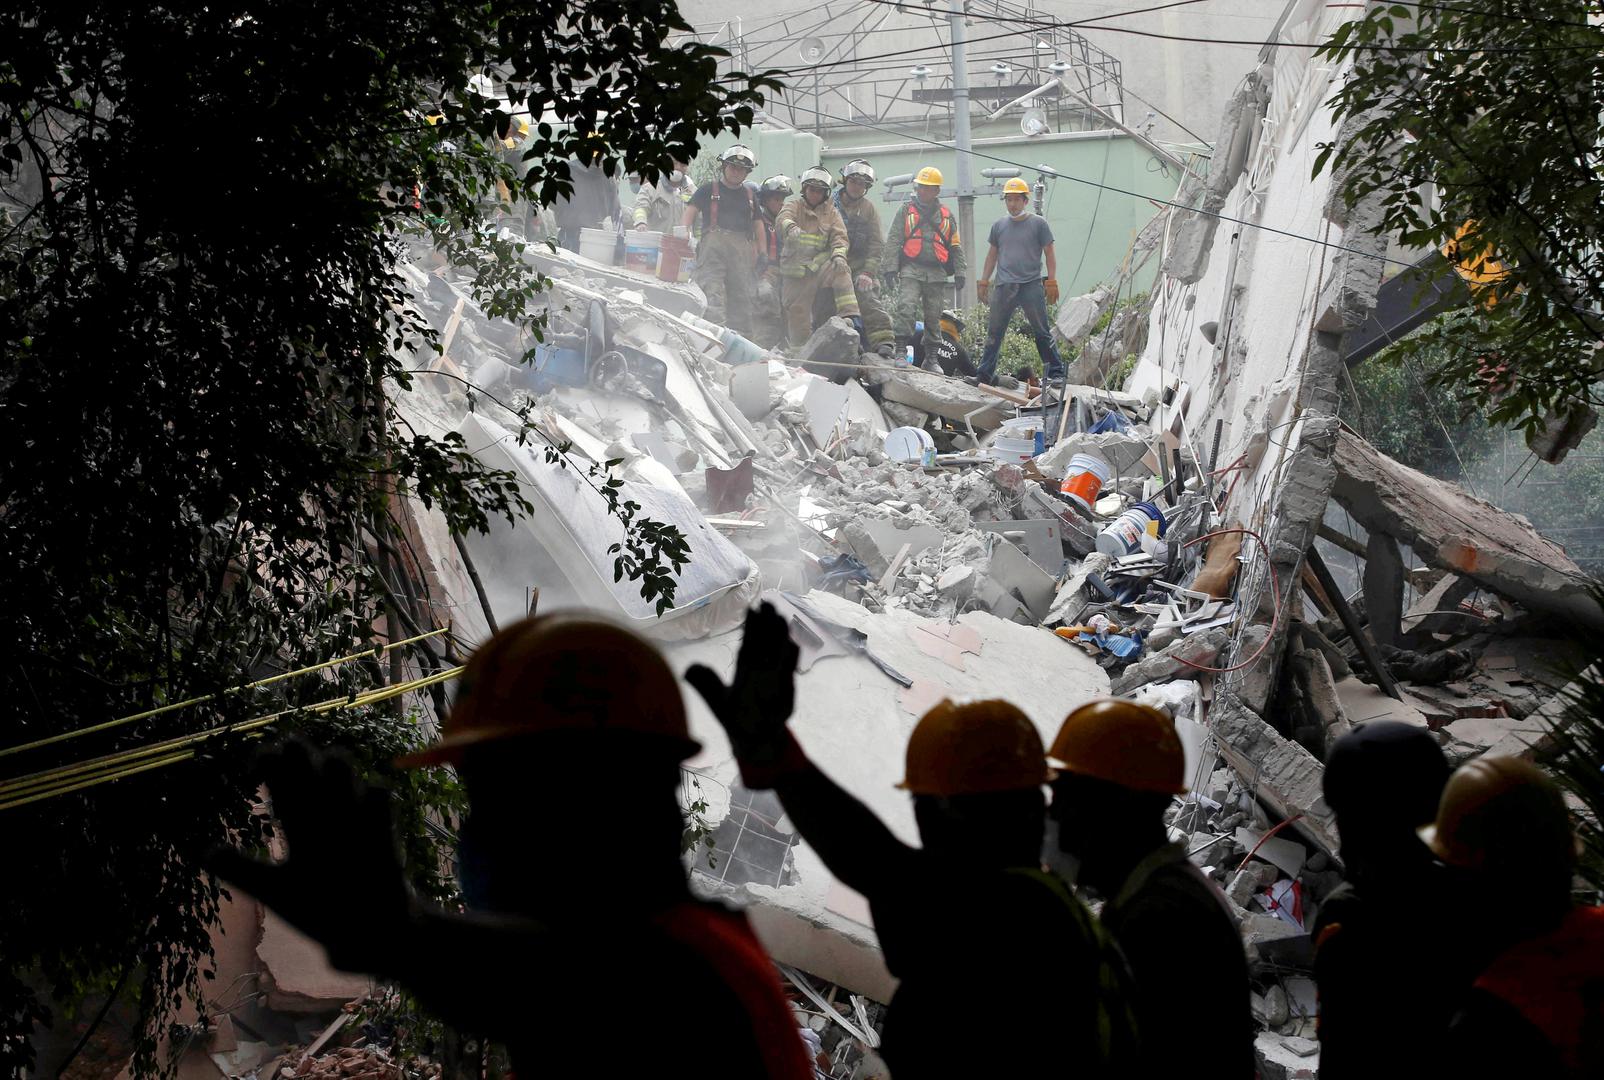 Vojnici i spasilačka služba pretražuju ruševine zgrade nakon potresa koji je pogodio Mexico City u listopadu 2017.
